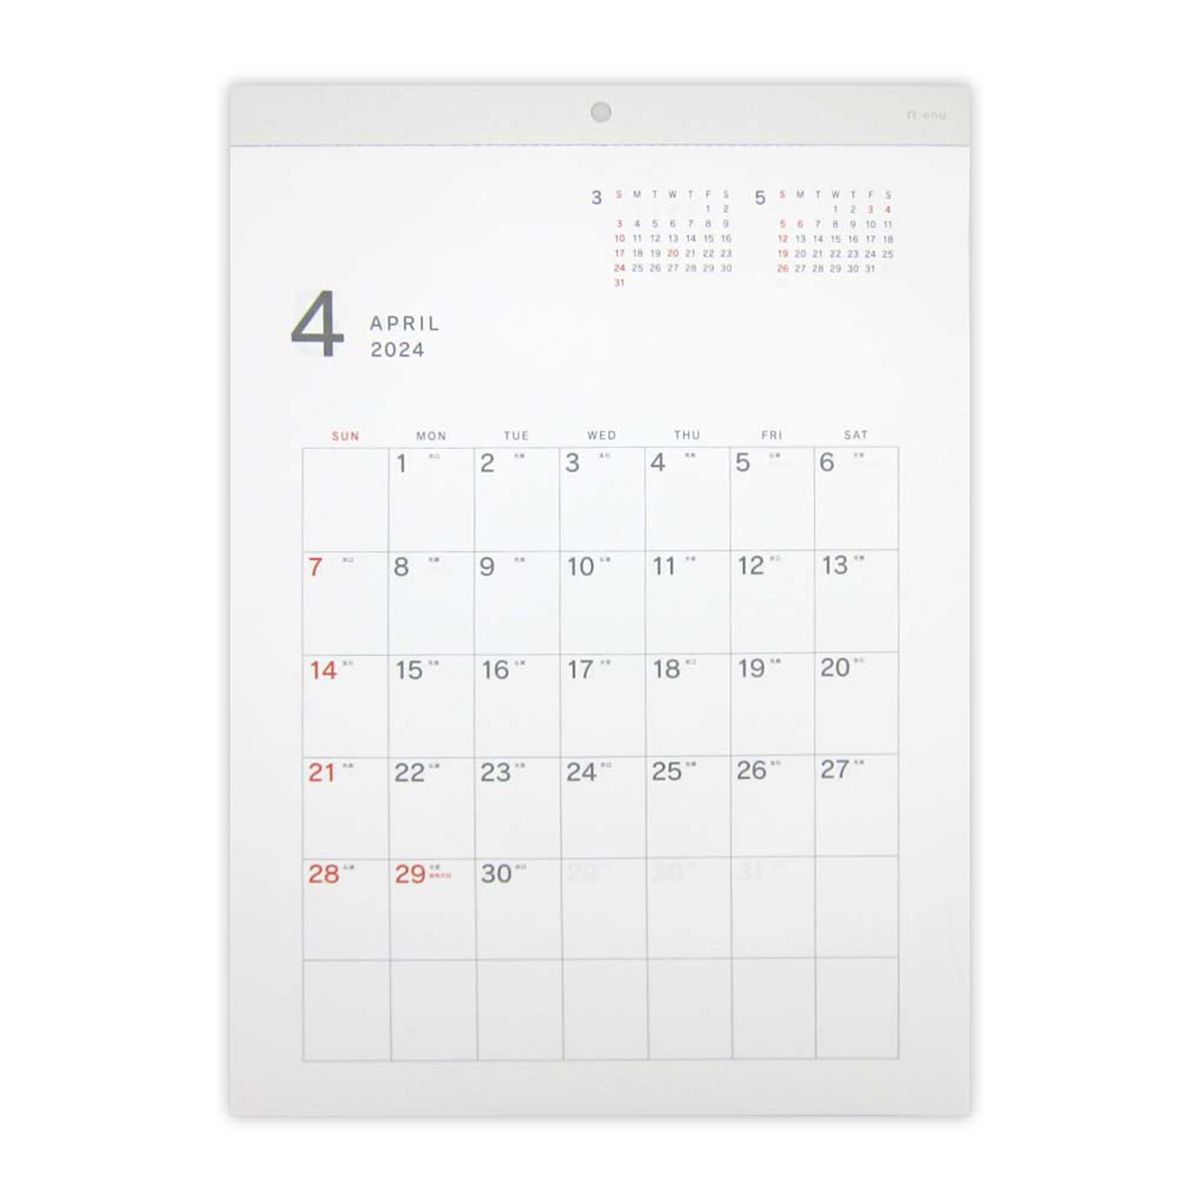 【在庫限り】A3 壁掛けカレンダー エヌ 4月始まり 353065